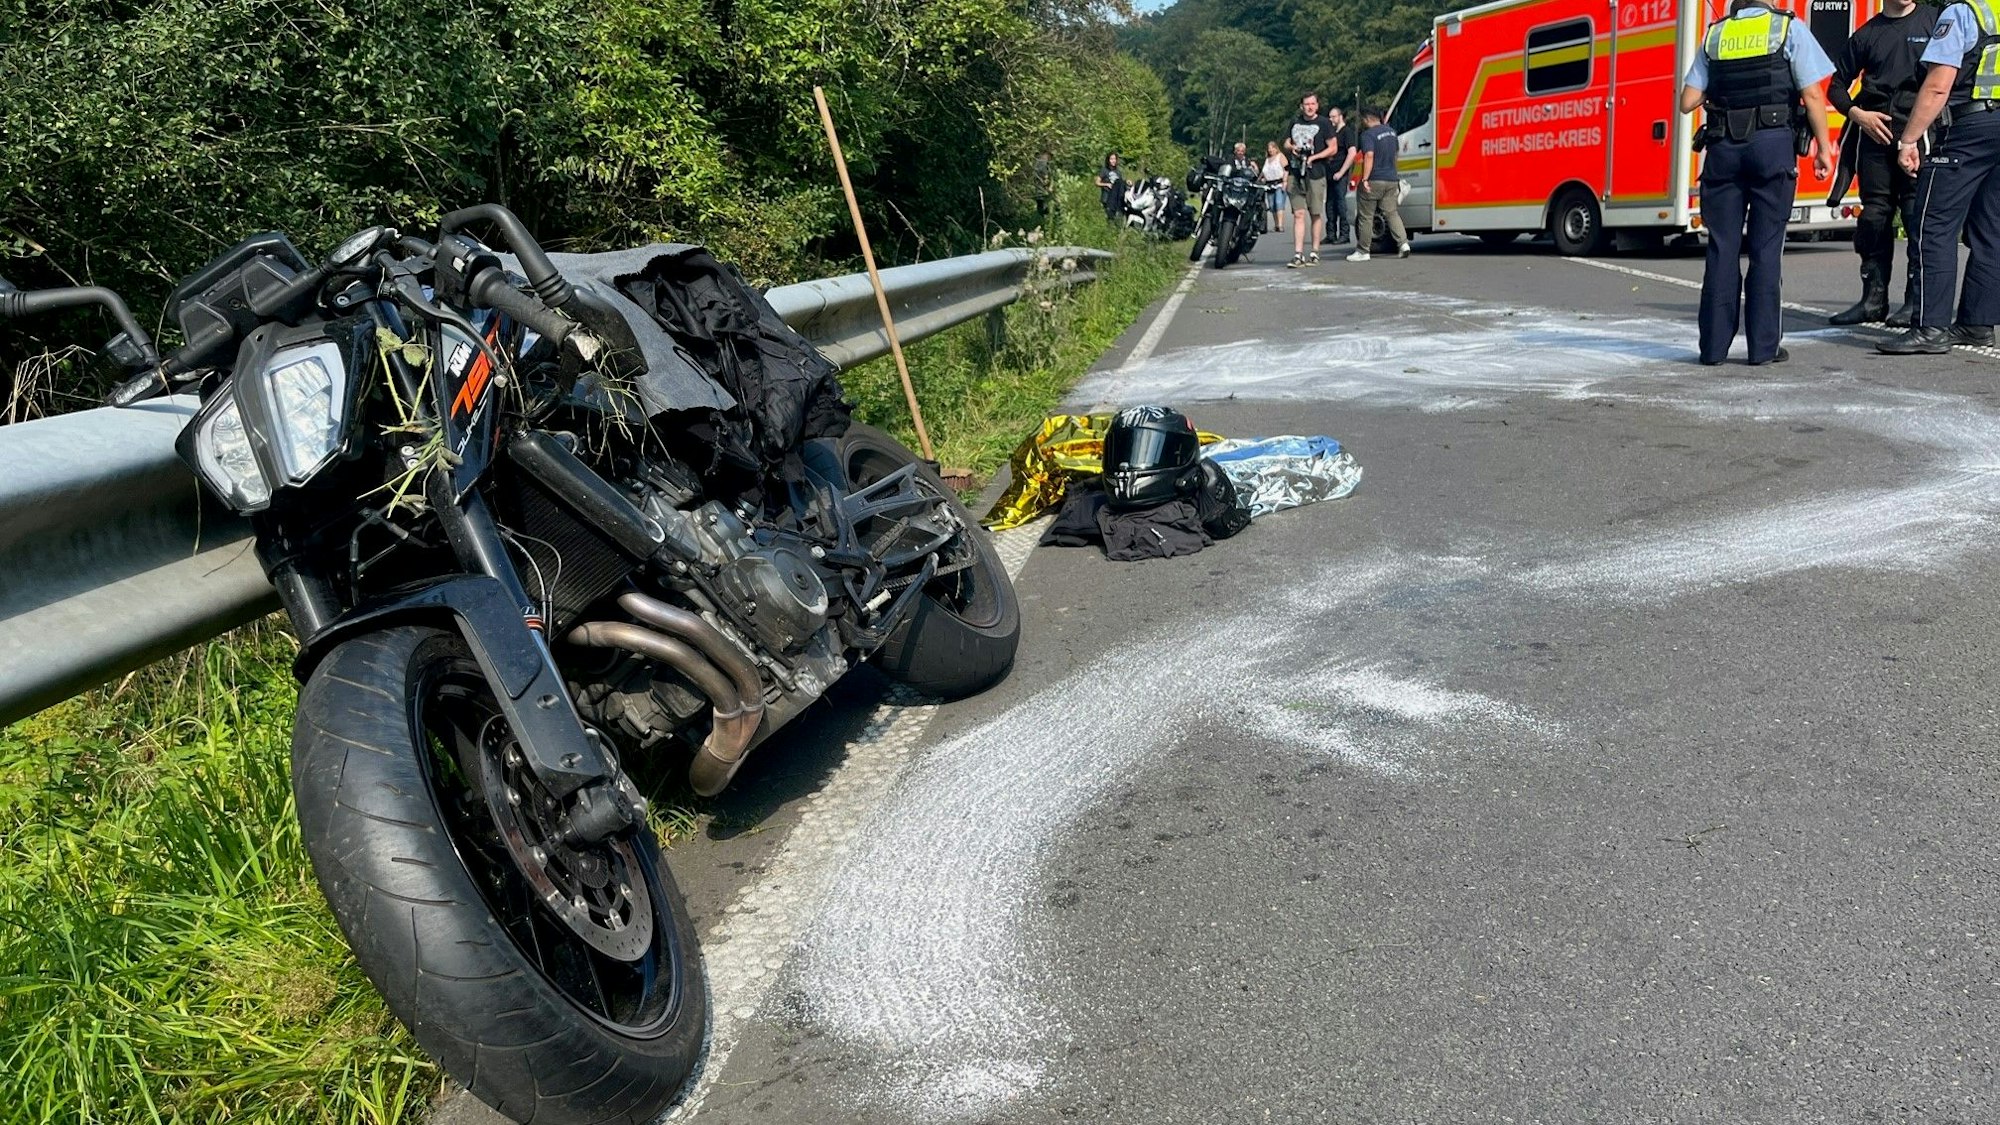 Ein beschädigtes Motorrad lehnt an der Leitplanke einer Straße, weiße Spuren sind auf dem Asphalt. Motorradkleidung und ein Helm liegen auf der Straße. Polizisten und ein Rettungswagen stehen im Hintergrund.